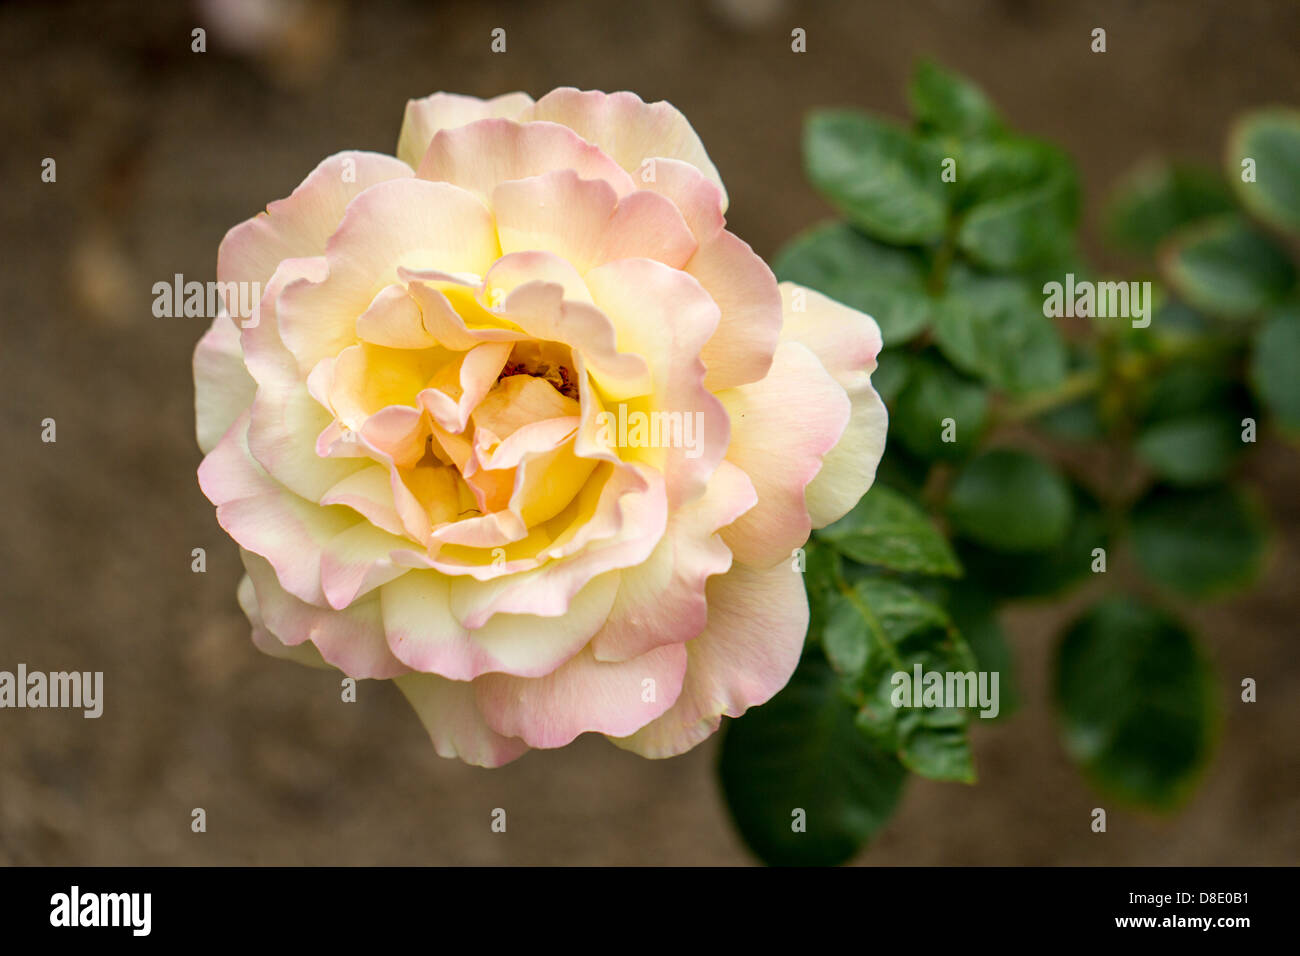 Fully opened rose Stock Photo - Alamy